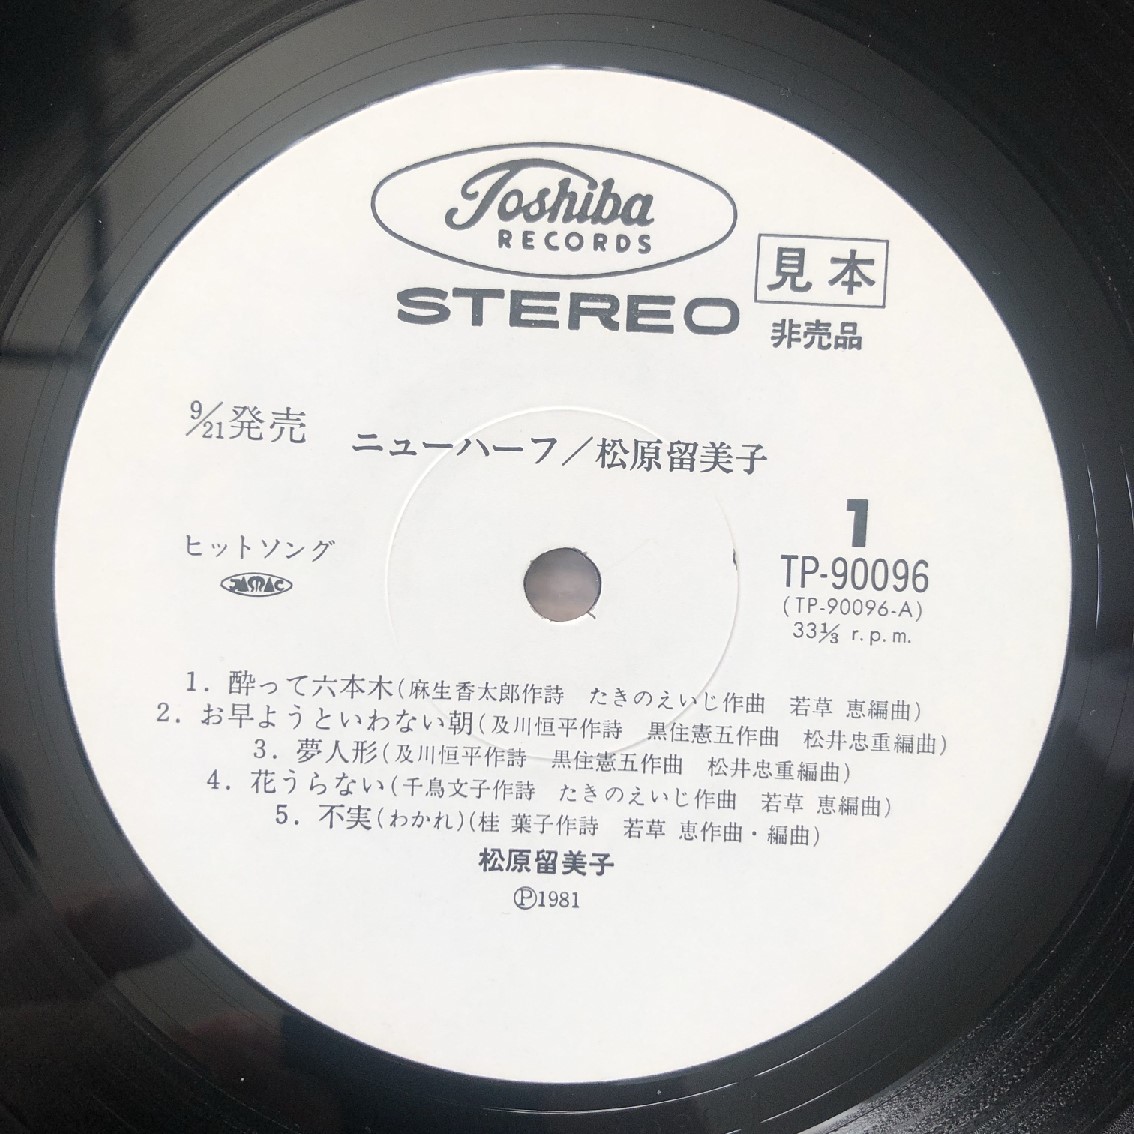 レア盤 松原留美子 Rumiko Matsubara 1981年 LPレコード ニューハーフ New Half 国内盤 オリジナルリリース盤 J-Pop_画像7